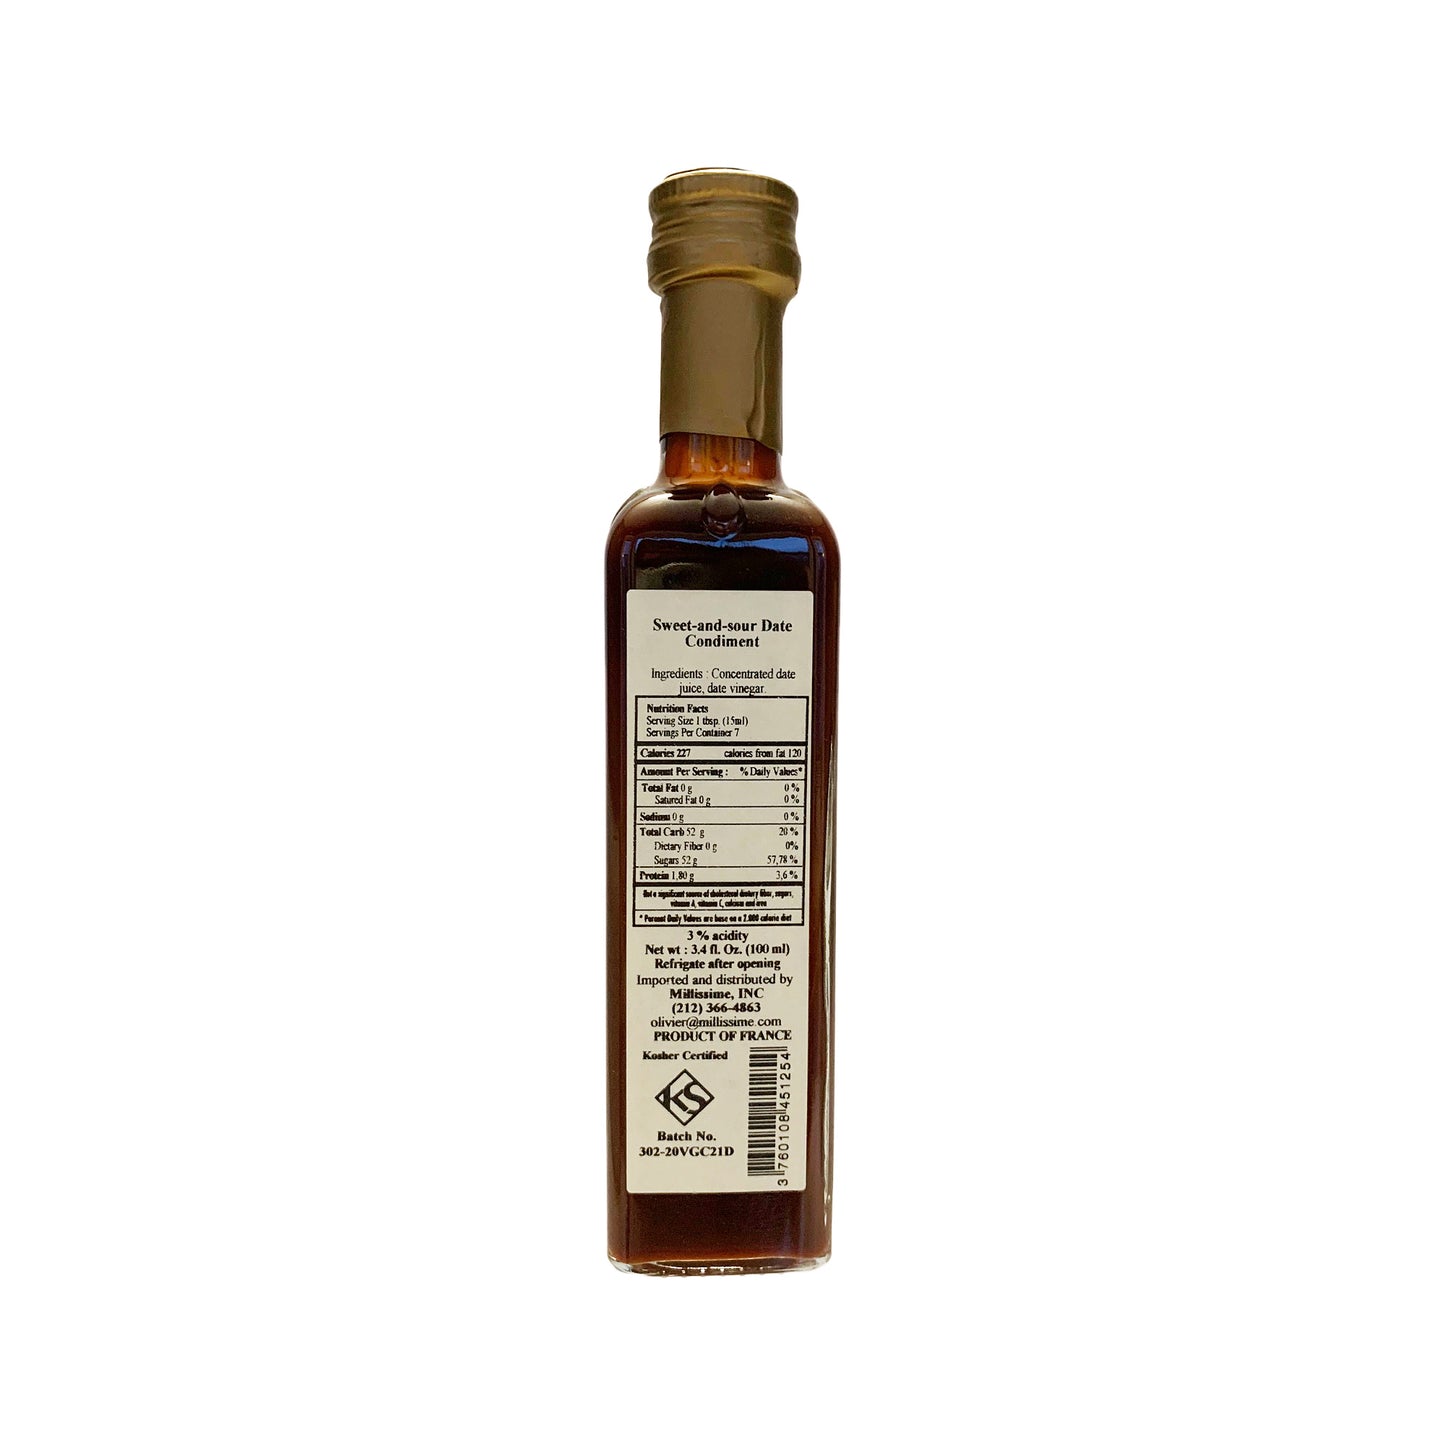 Huilerie Beaujolaise Sweet + Sour Date Vinegar - 100ml (3.38 fl oz)